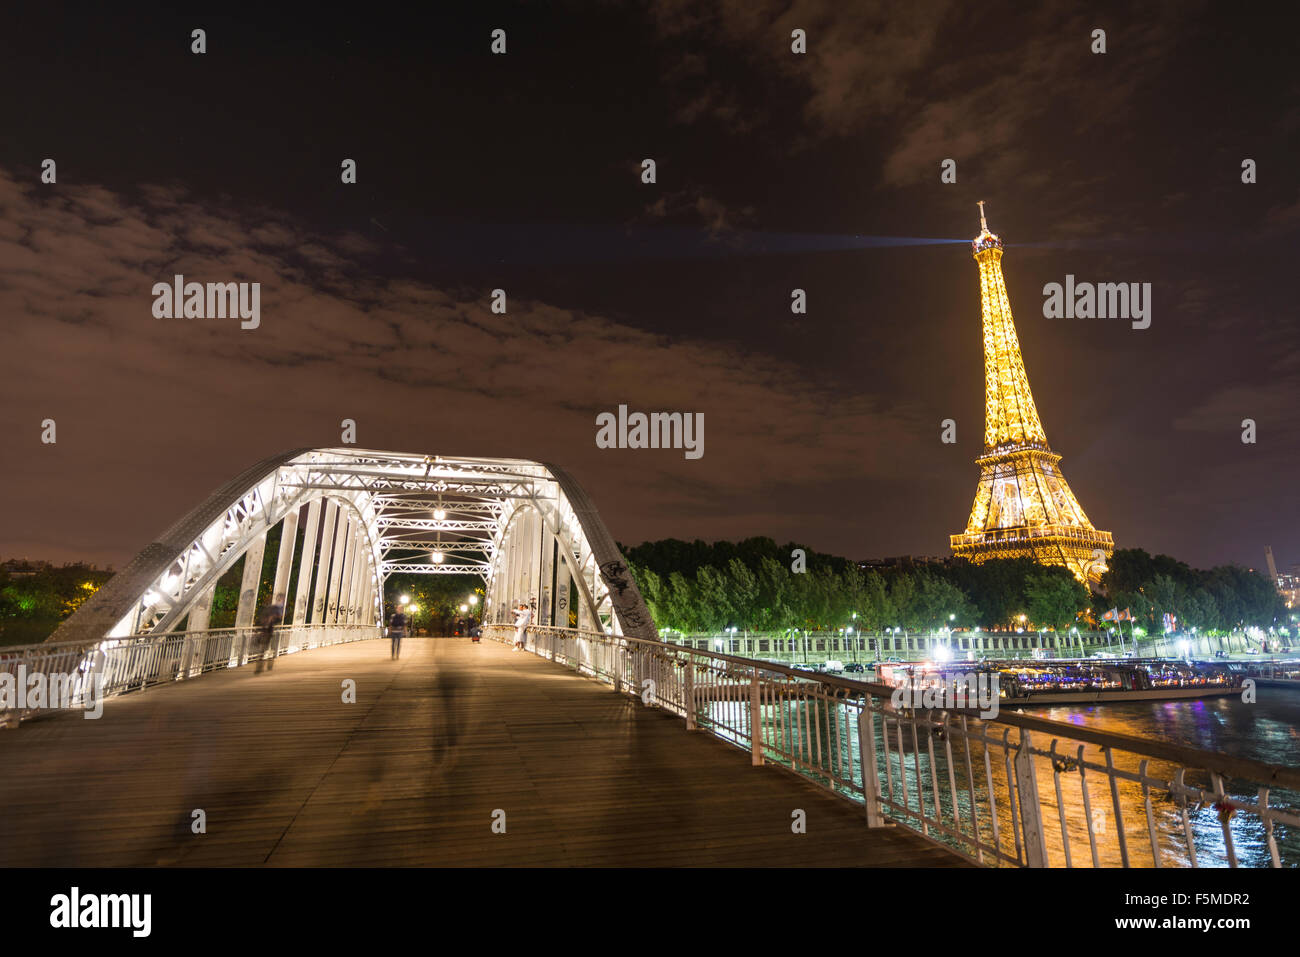 La Tour Eiffel illuminée la nuit, passerelle au-dessus de la Seine, Tour Eiffel, Paris, Ile-de-France, France Banque D'Images